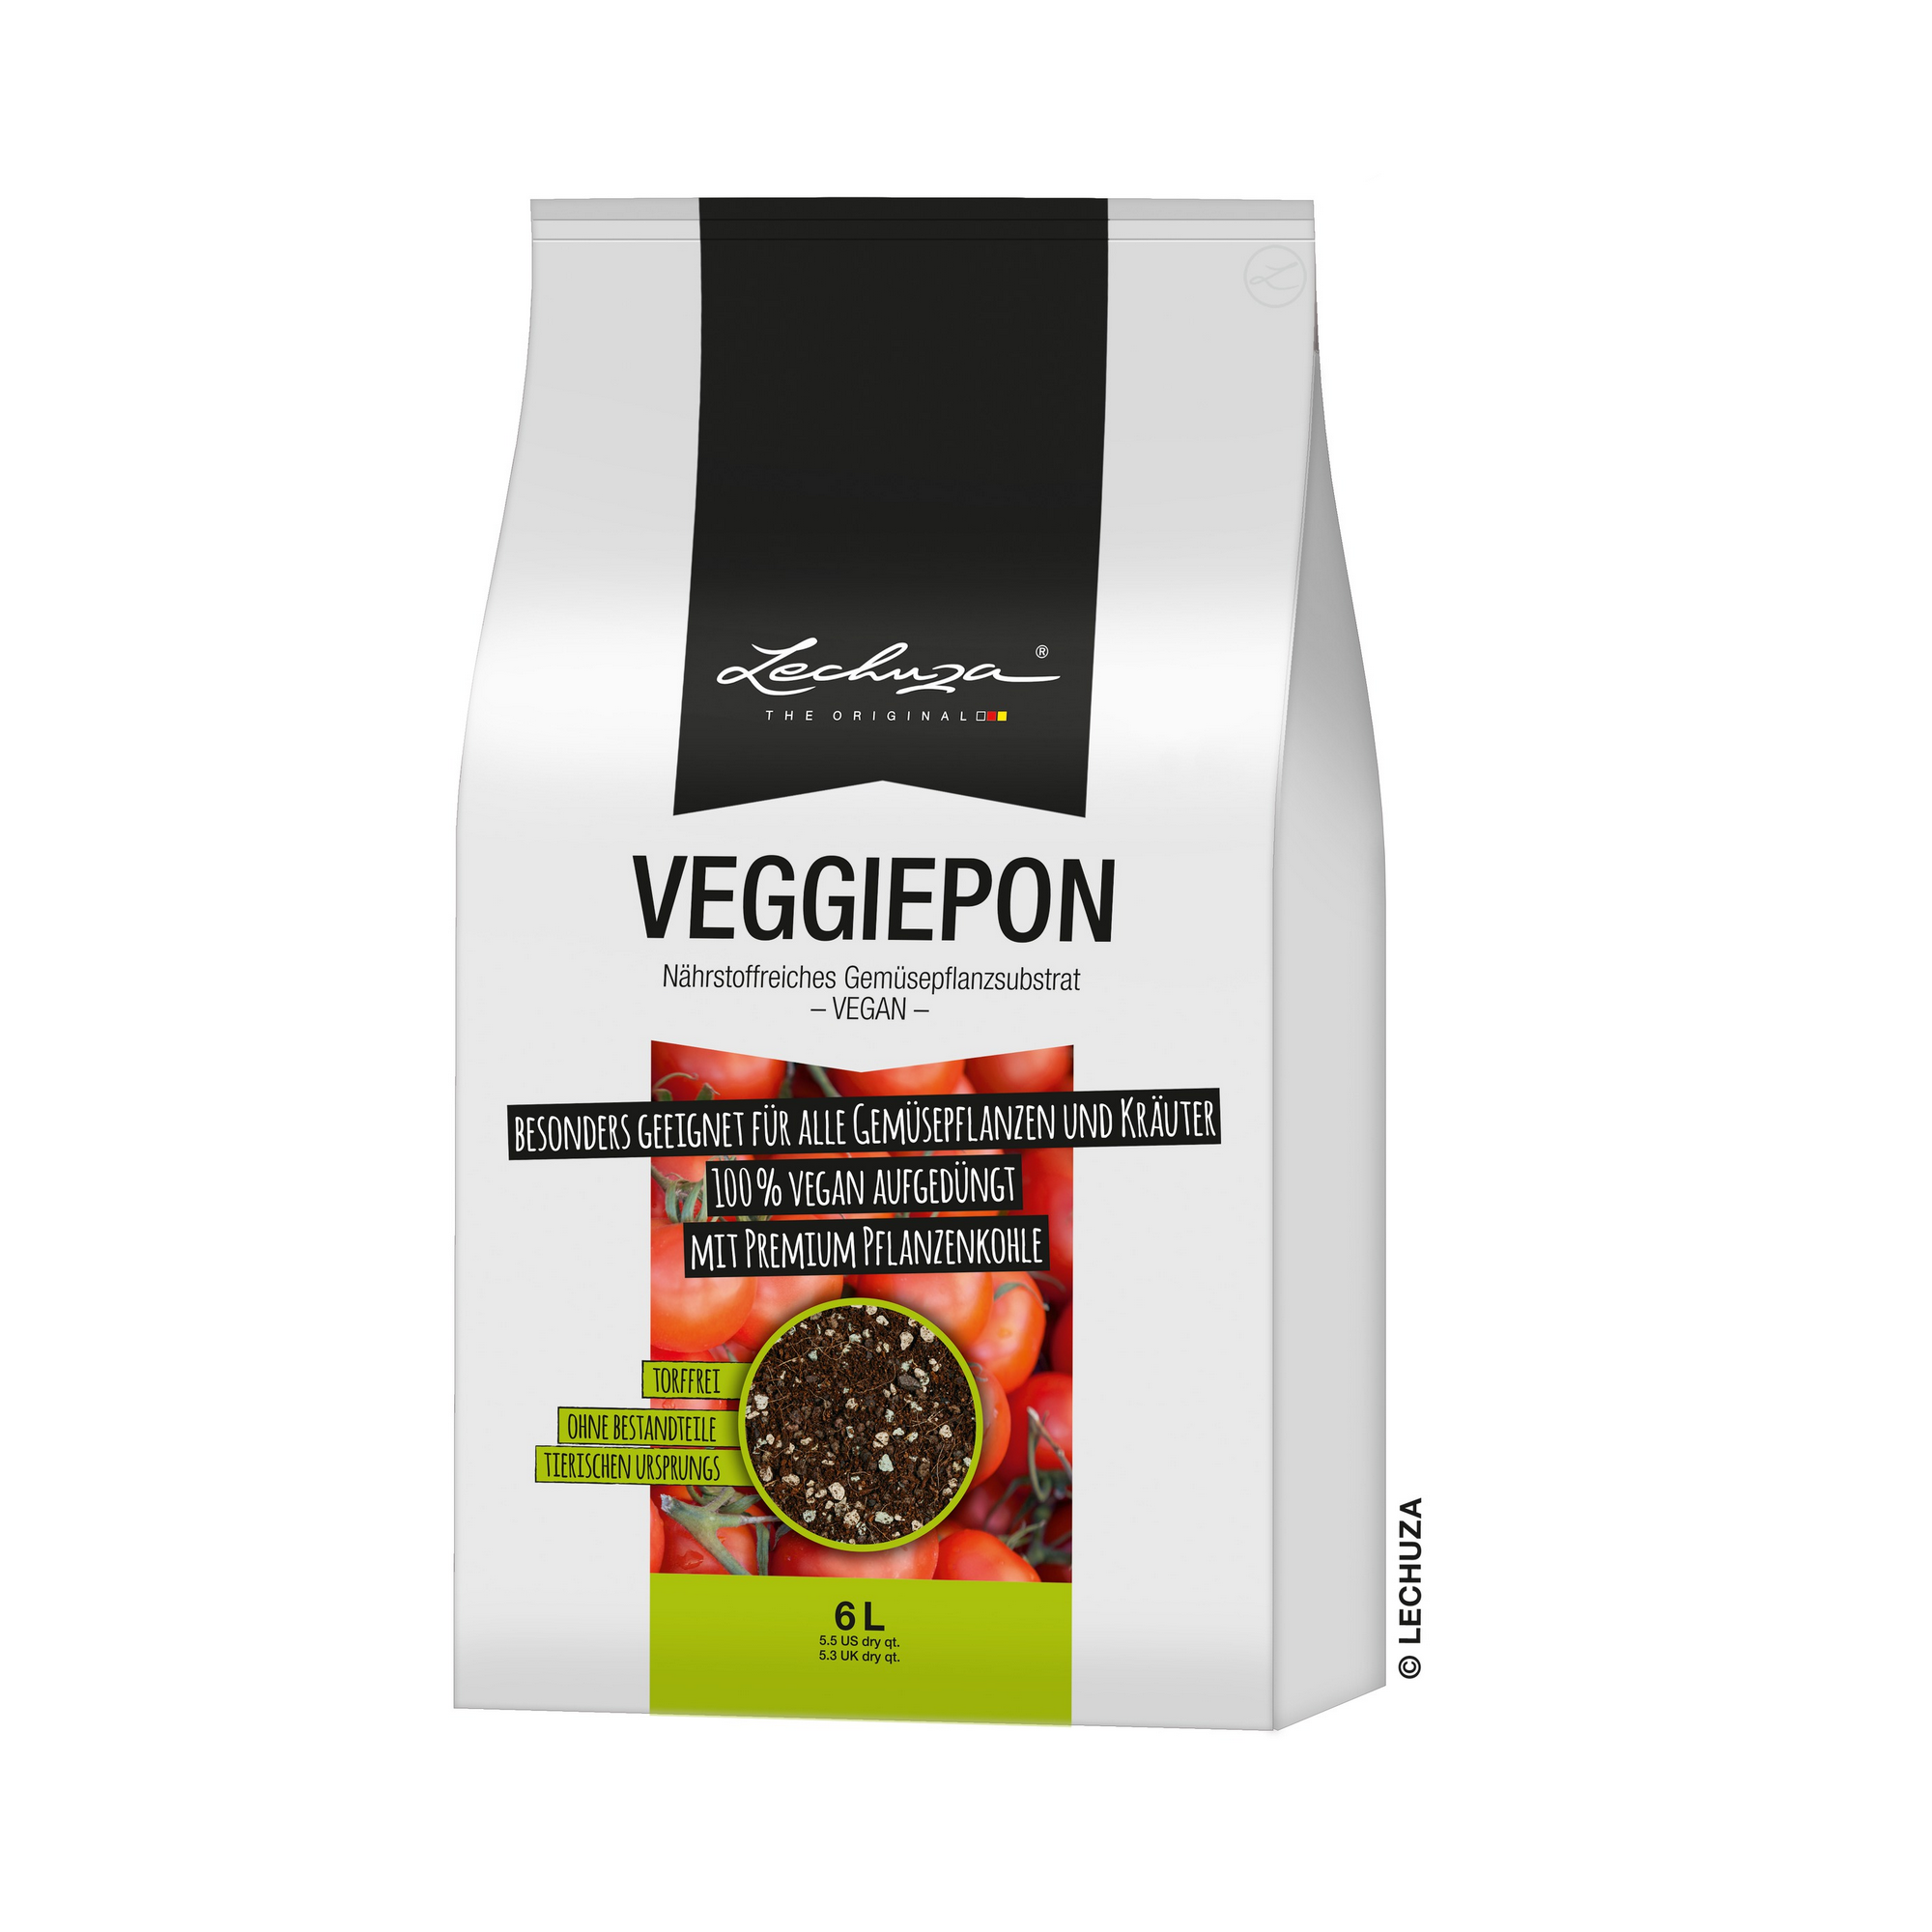 Gemüsepflanzsubstrat 'VEGGIEPON' 6 l + product picture